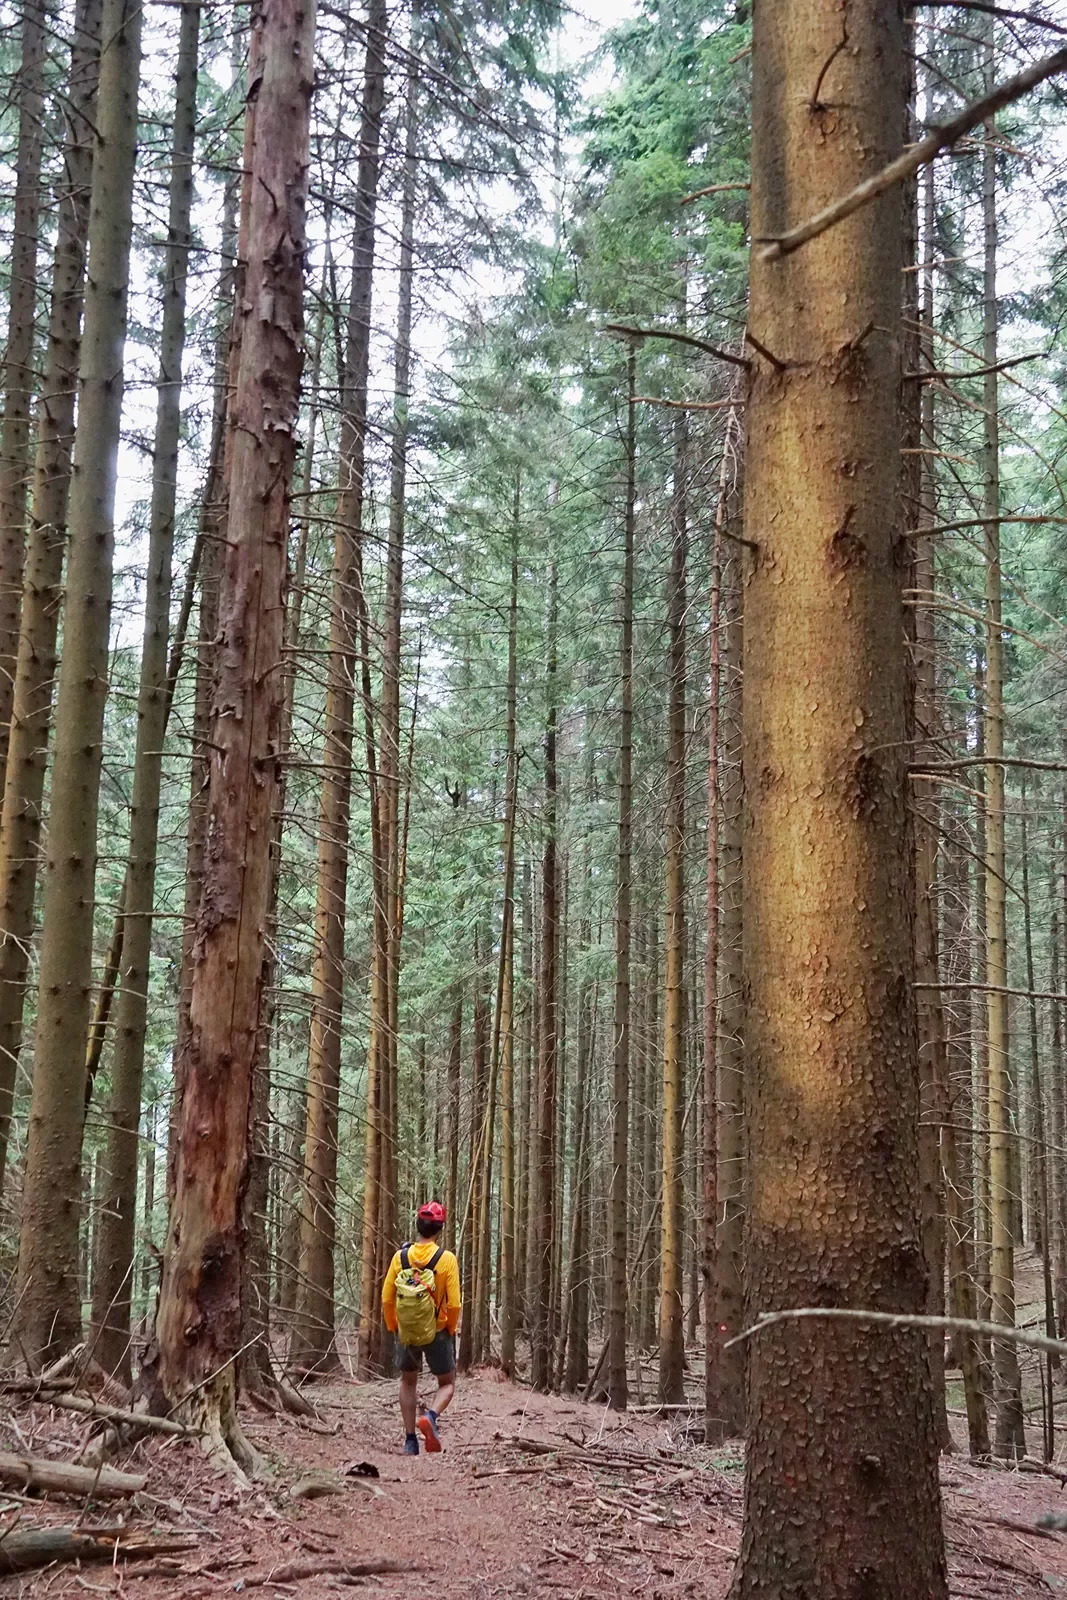 A hiker walks through a forest